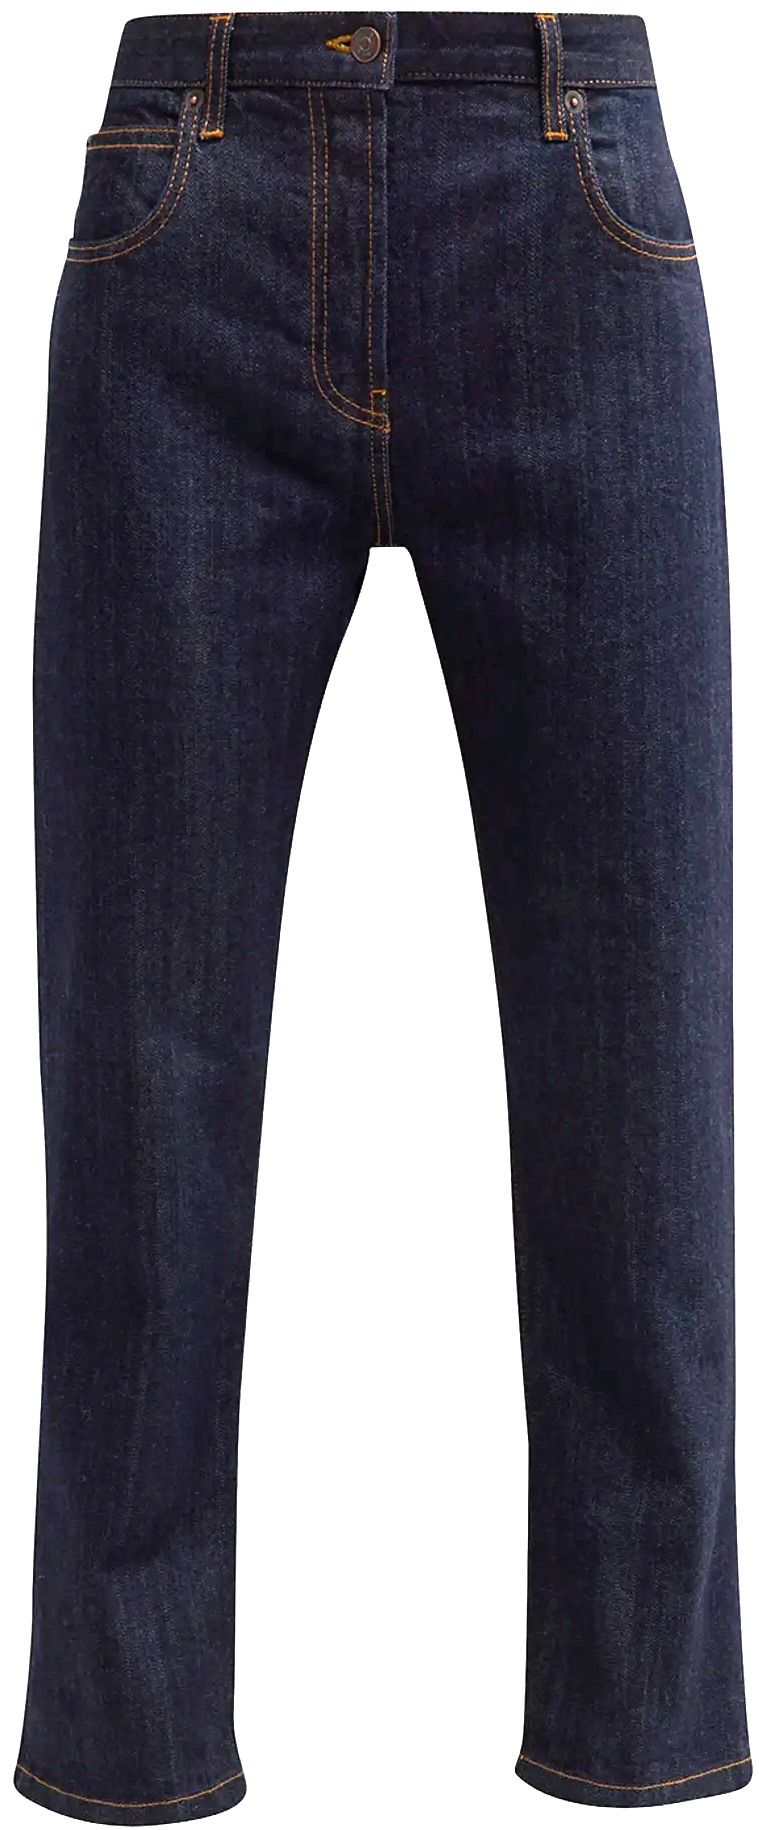 Riaco Jeans (Indigo) | style